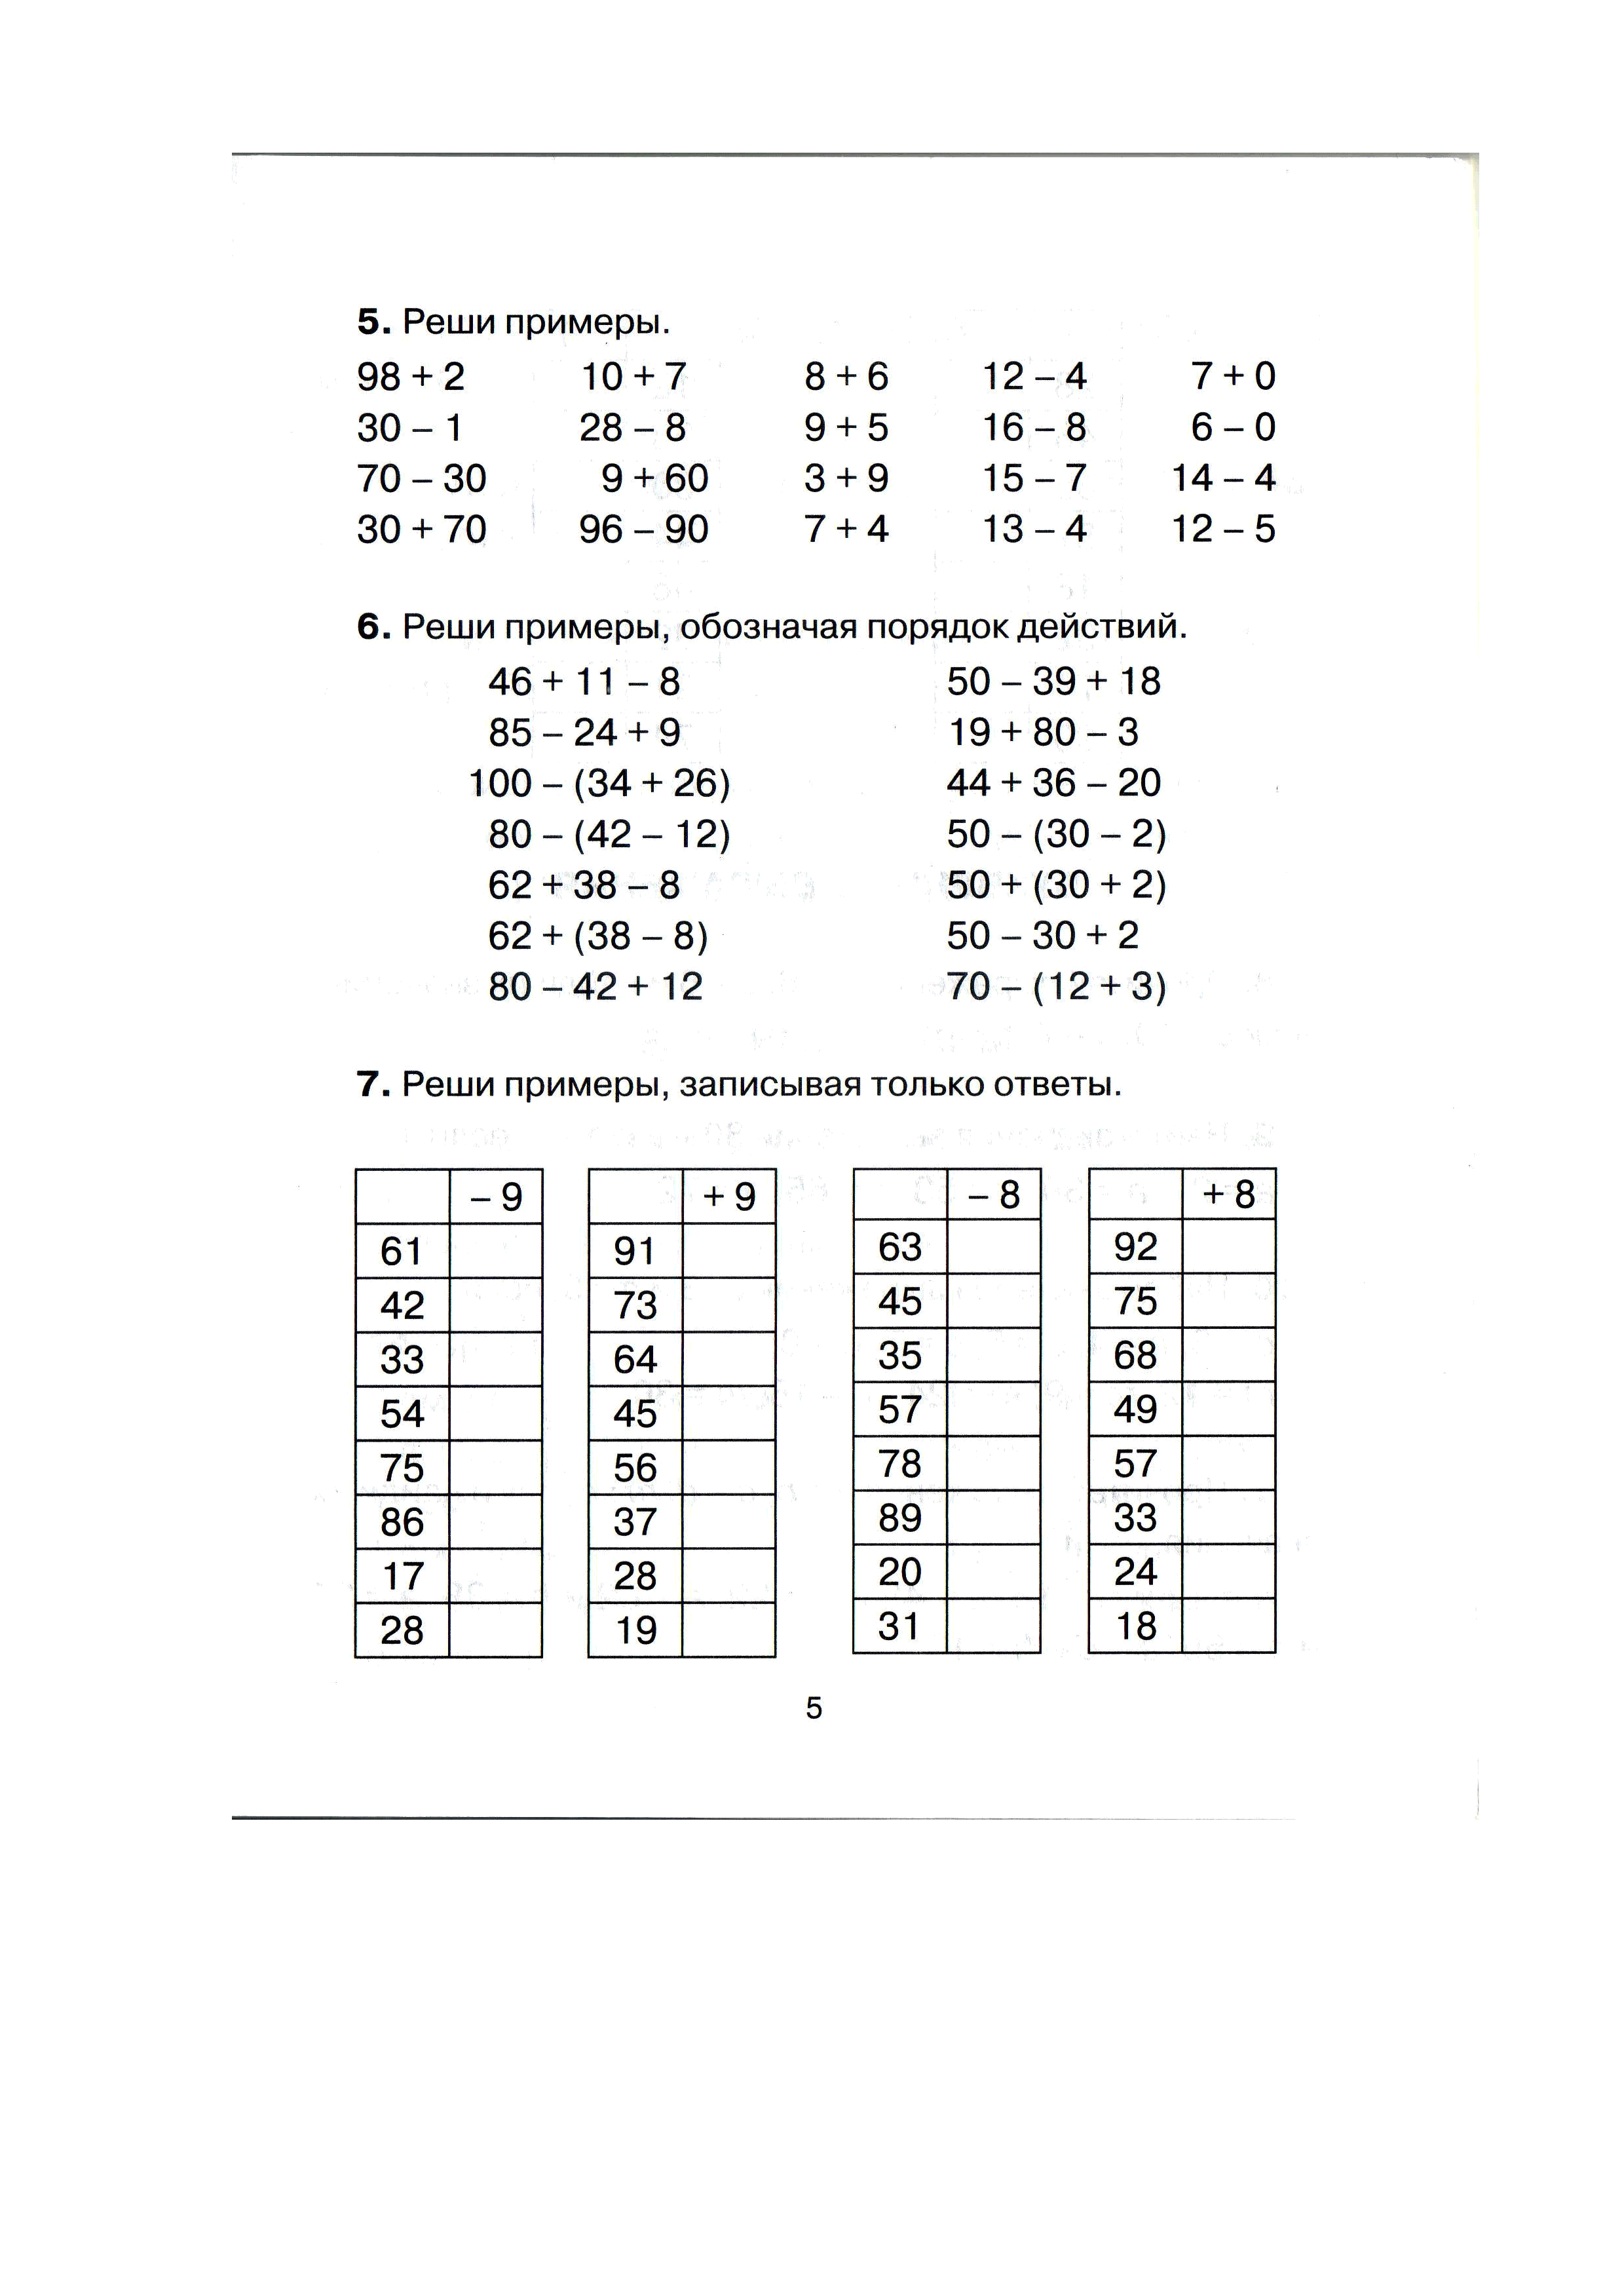 Математика з класс. Образцы задач по математике 3 класс. Примеры по математике 2 класс 3 четверть. Тренировочные задания по математике 3 класс. Задания по математике для 3 класса задачи и примеры.